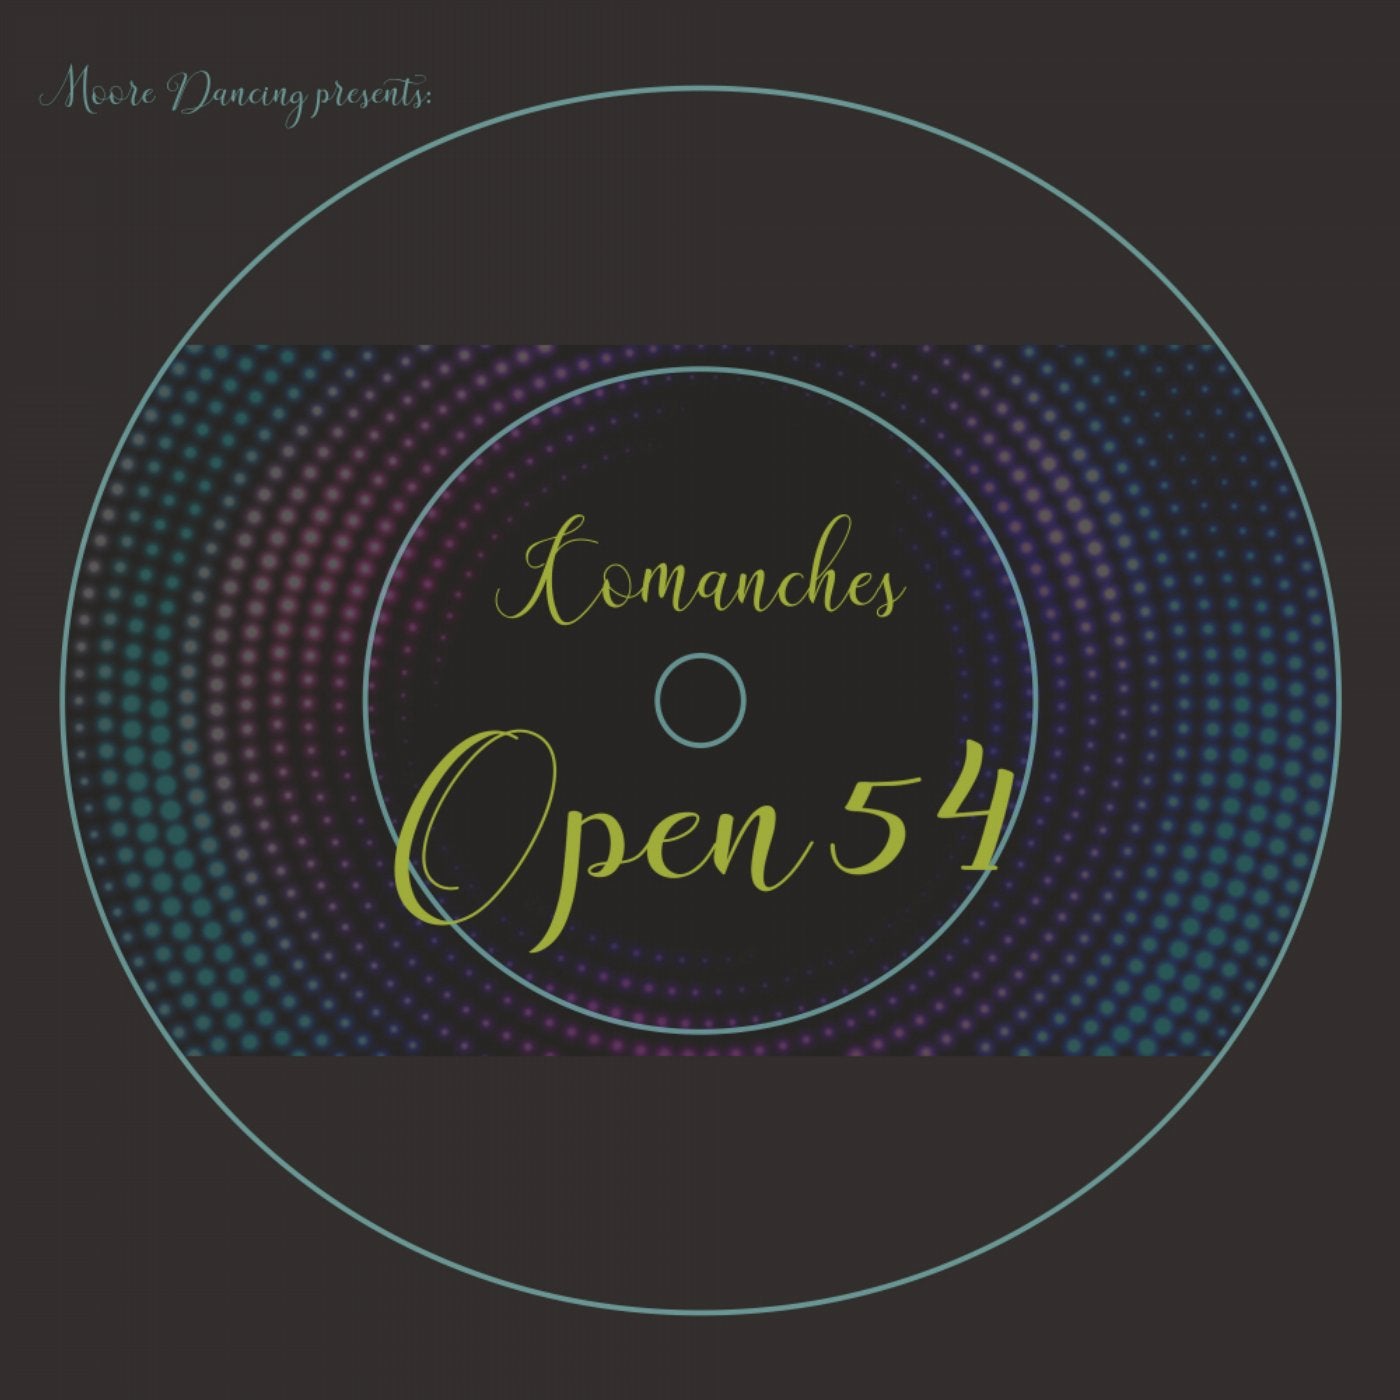 Open 54